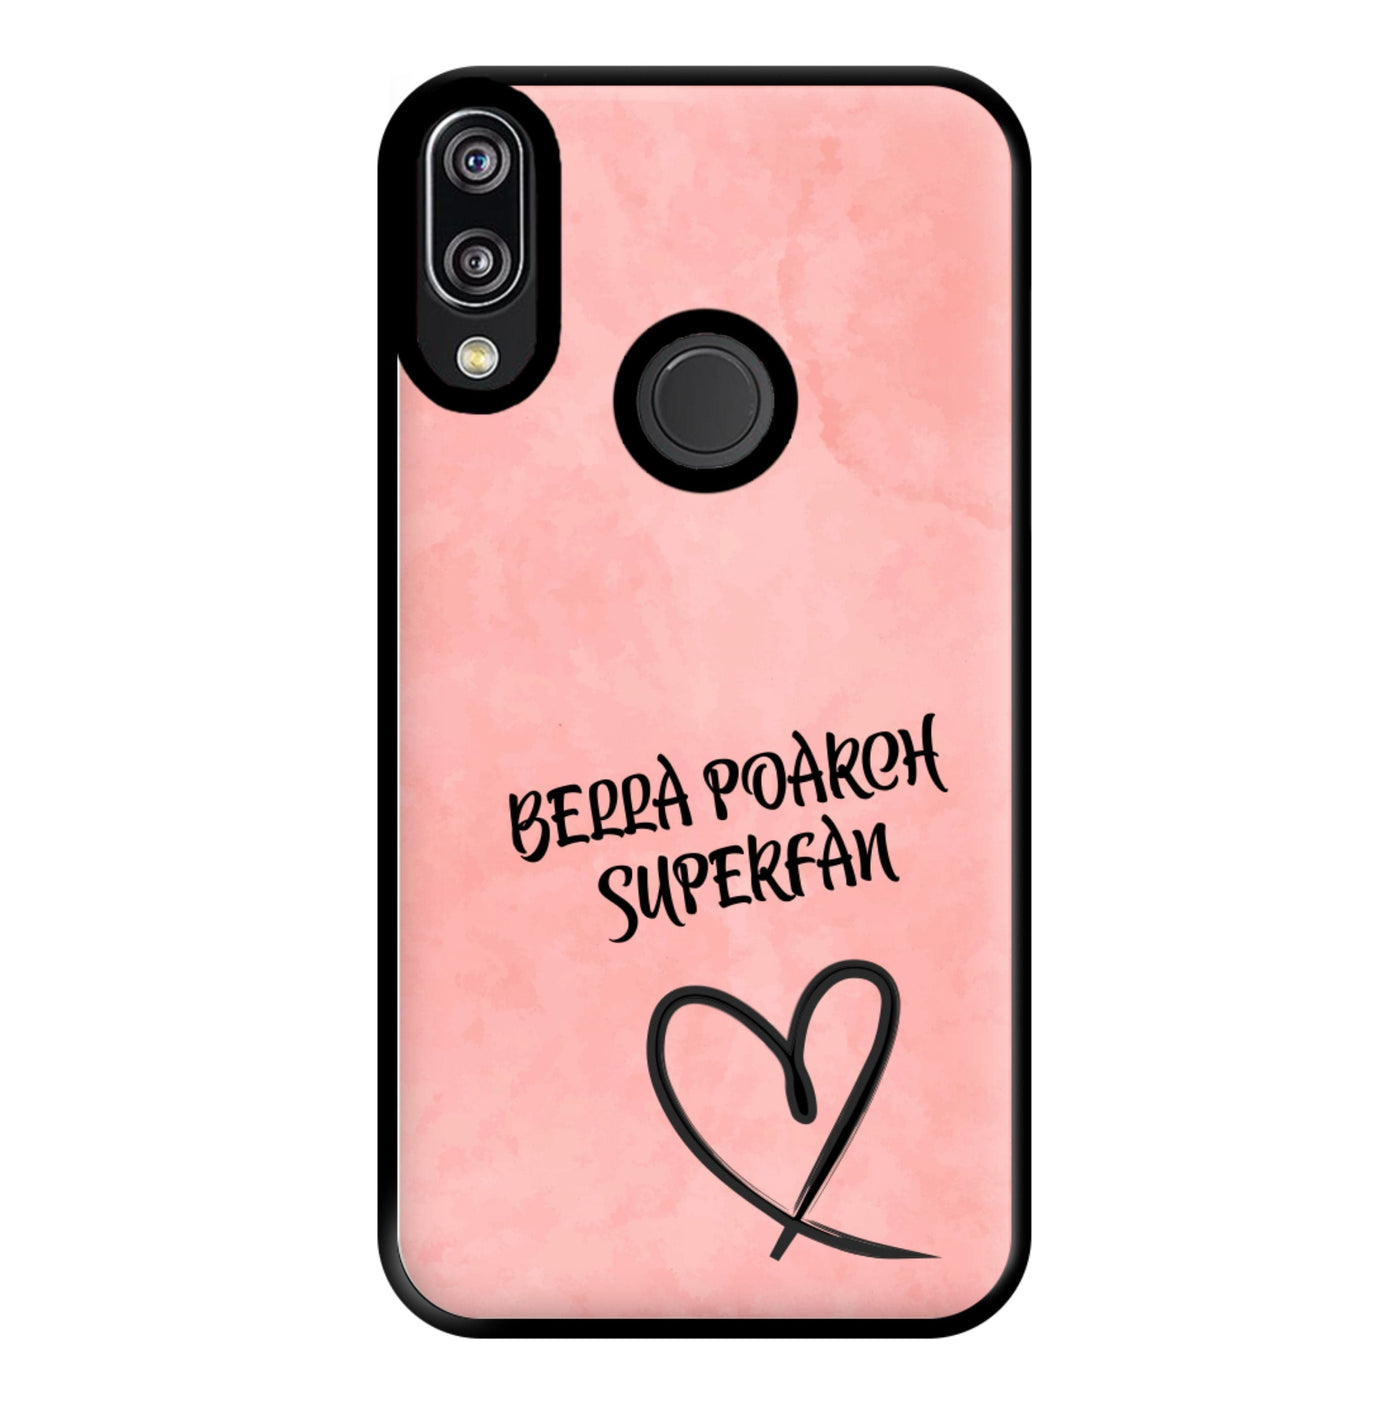 Bella Poarch Superfan Phone Case